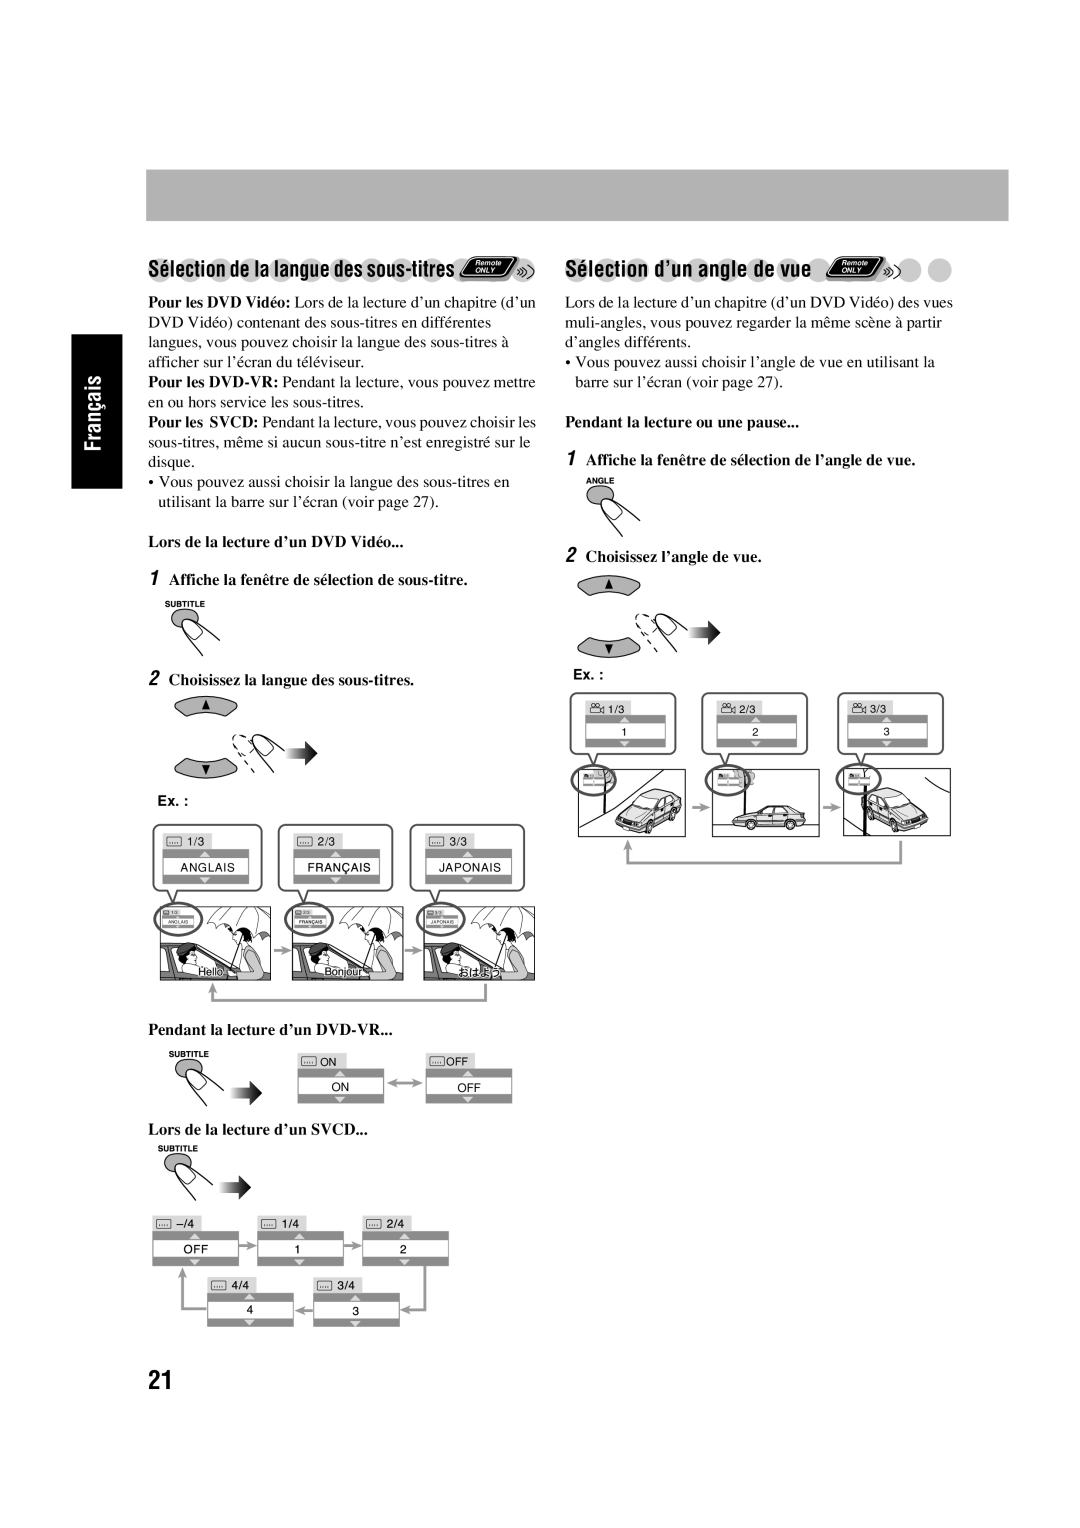 JVC SP-HXD77 manual Sélection d’un angle de vue, Sélection de la langue des sous-titres, Pendant la lecture ou une pause 